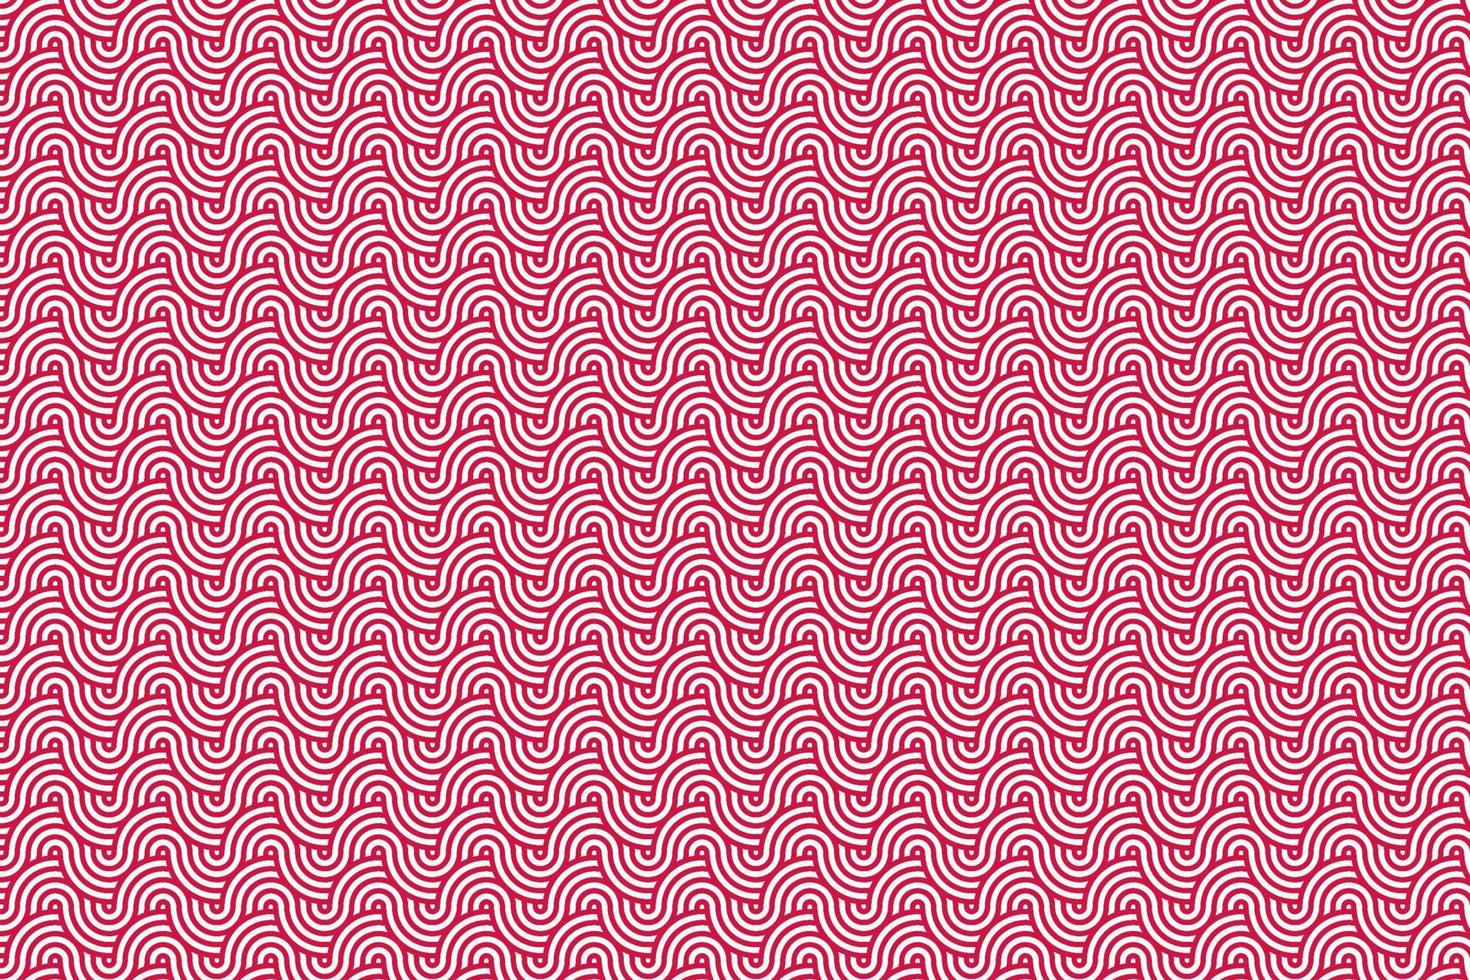 patrón de onda japonés rizado rojo y blanco vector